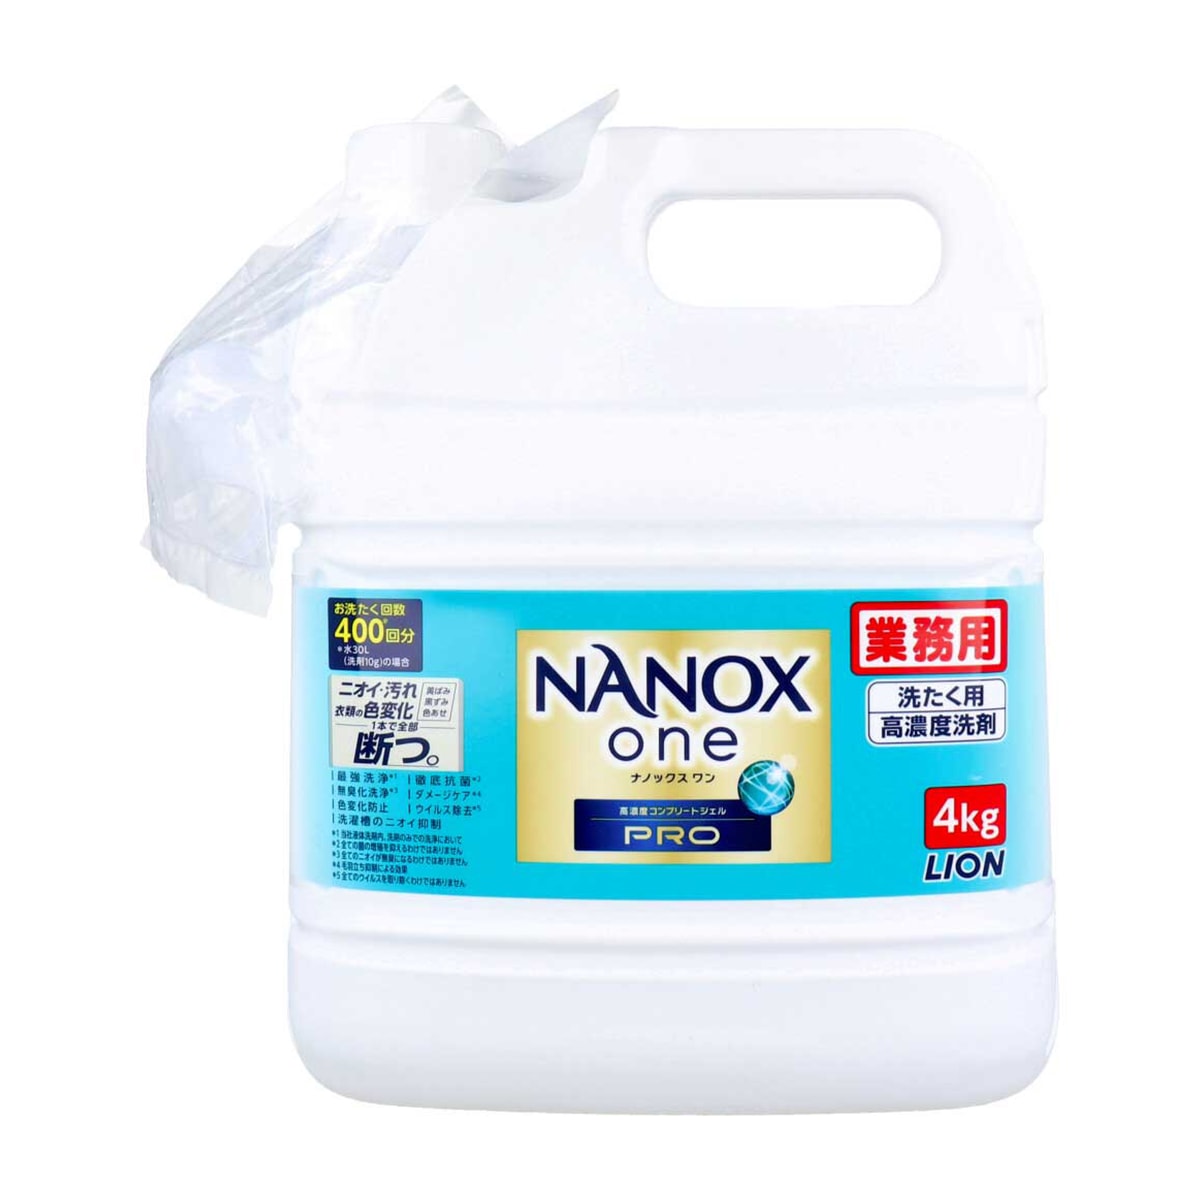 ライオン洗濯用合成洗剤 業務用 NANOXone ナノックスワン 洗たく用高濃度洗剤 高濃度コンプリートジェル PRO パウダリーソープの香り 4kg